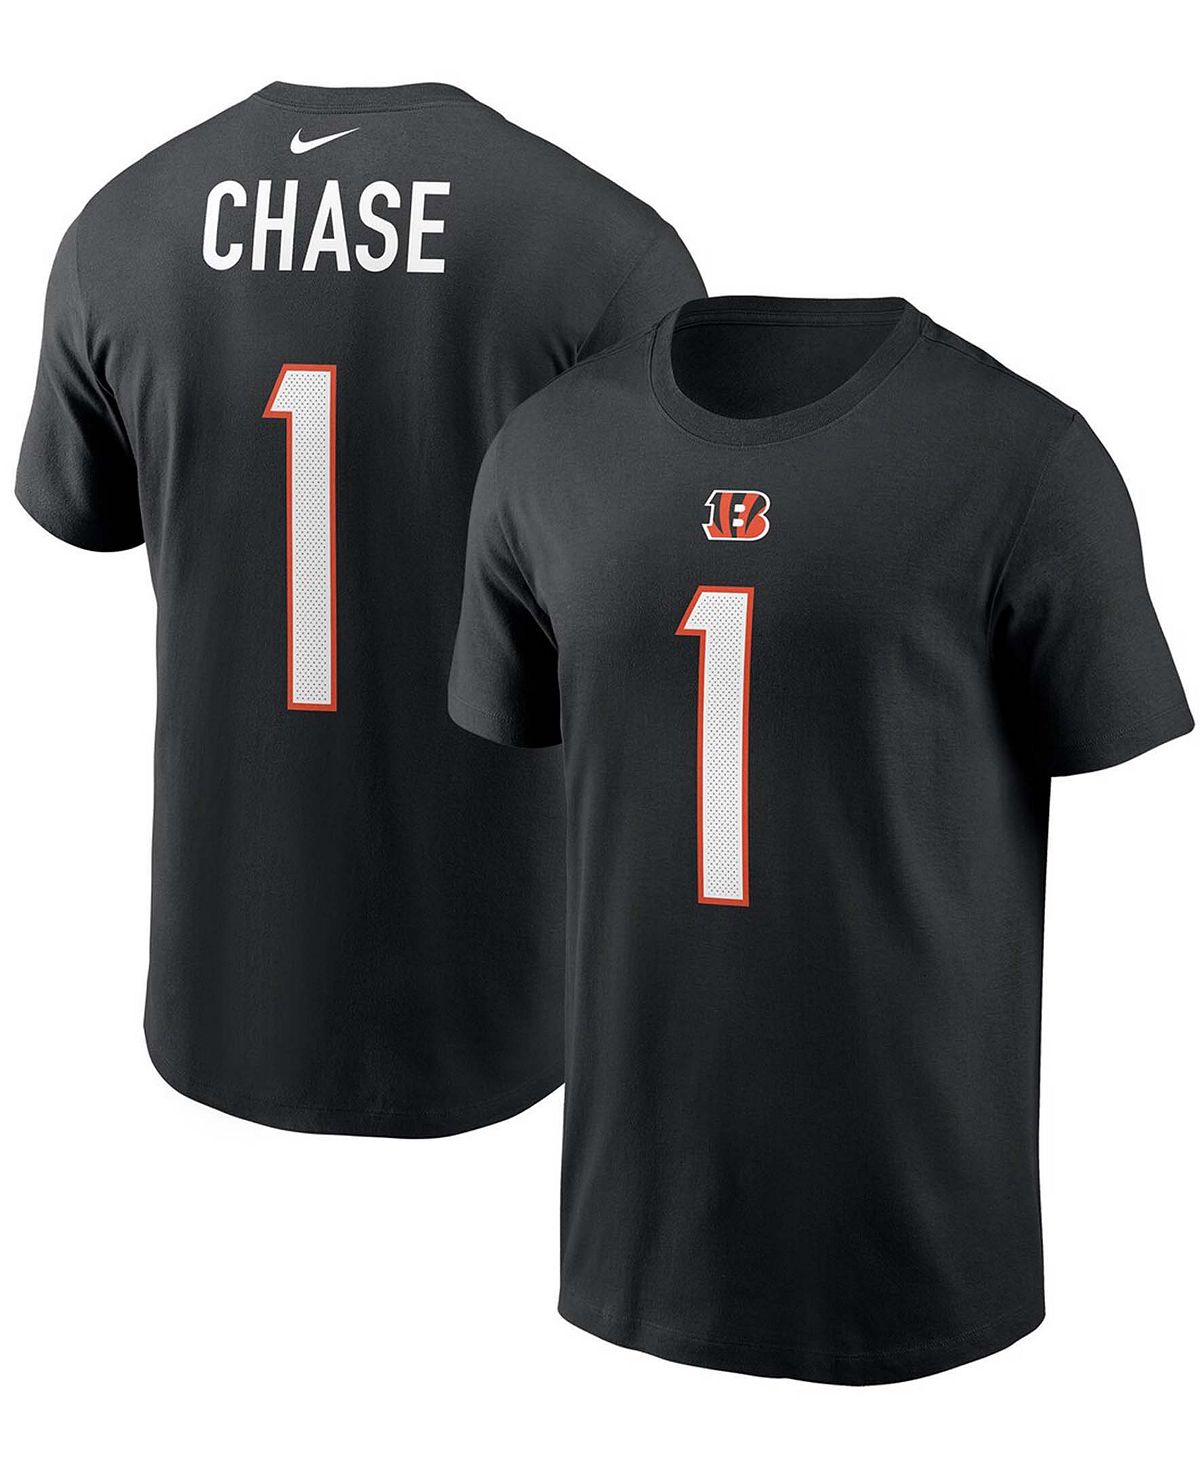 Мужская футболка Ja'Marr Chase Black Cincinnati Bengals с именем и номером игрока первого раунда драфта НФЛ 2021 года Nike